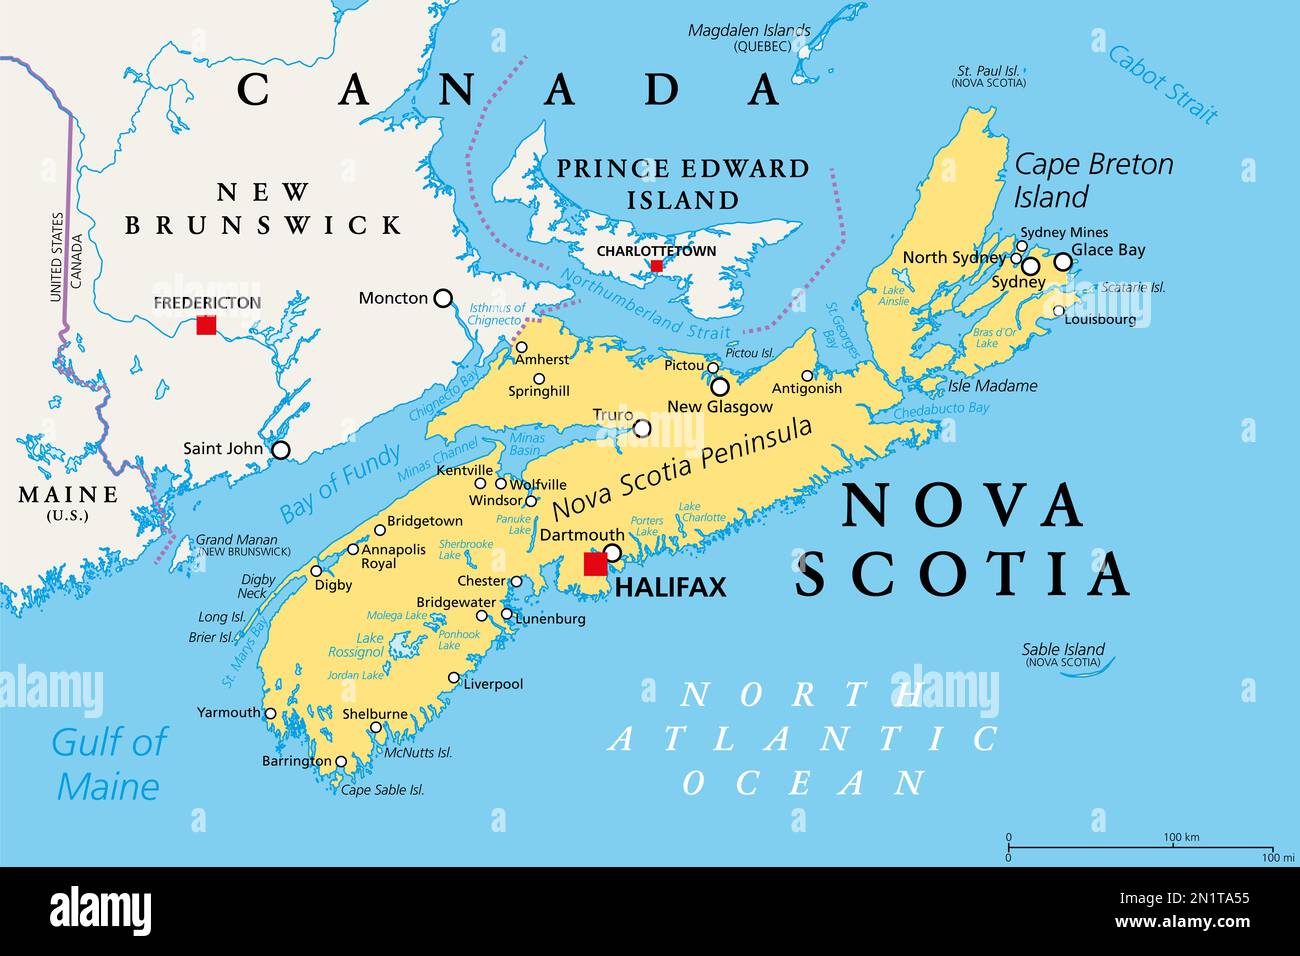 Nova Scotia, provincia marittima e atlantica del Canada, mappa politica. Isola di Capo Breton e penisola della Nuova Scozia, con la capitale Halifax. Foto Stock